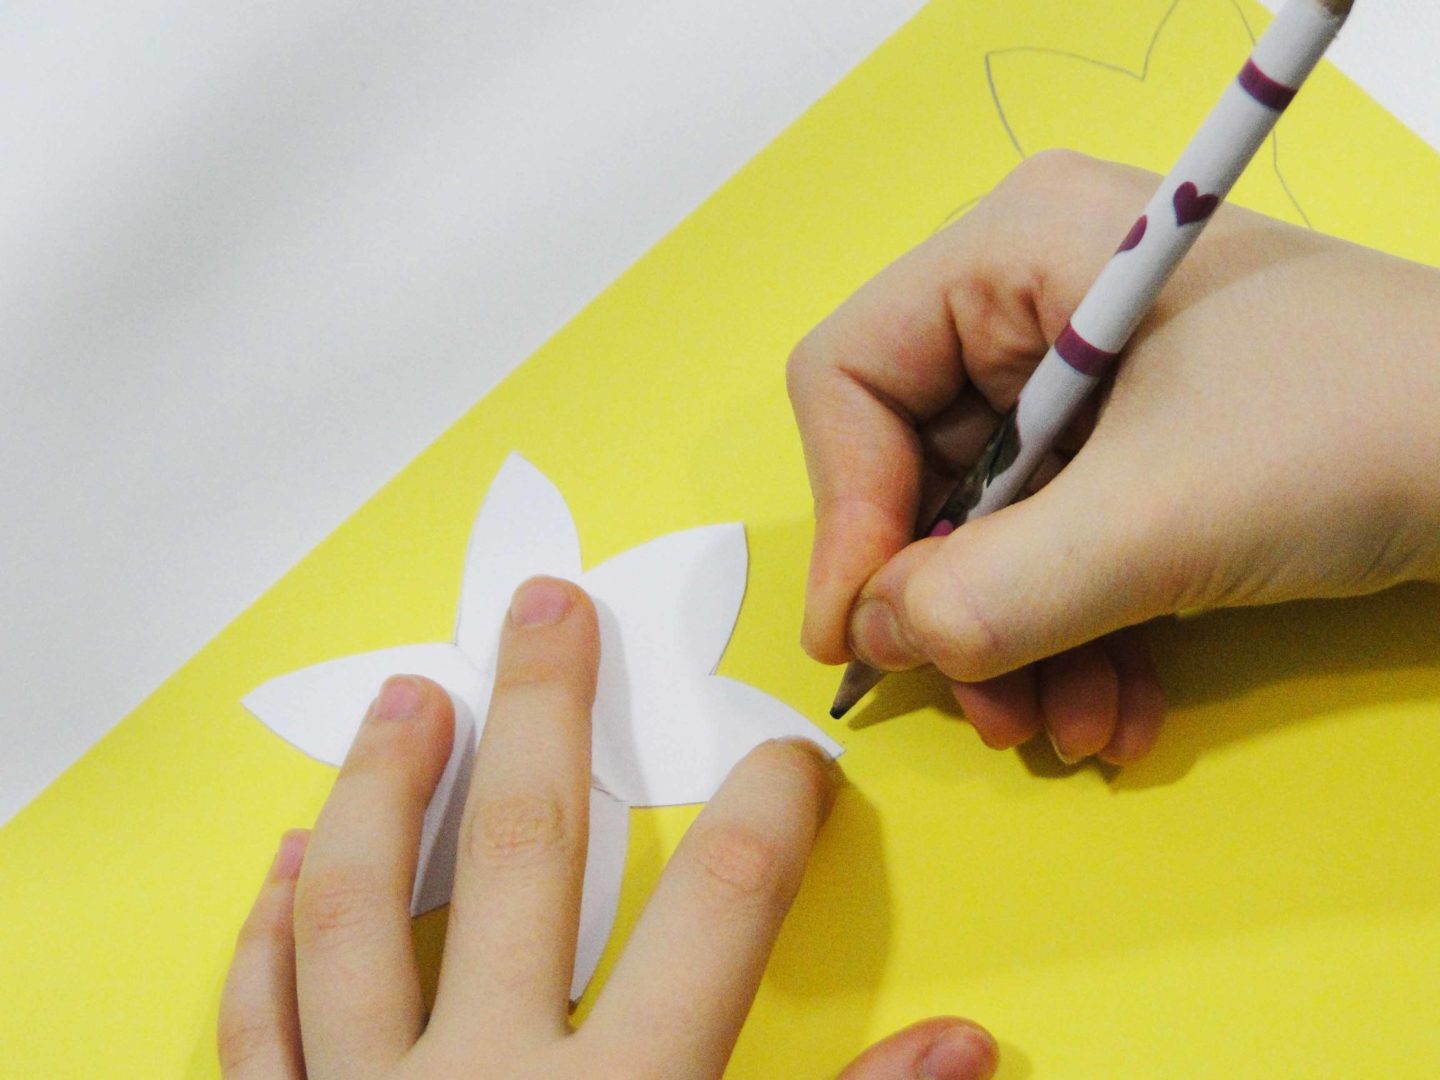 dziewczynka obrysowuje szablony na żółtym papierze